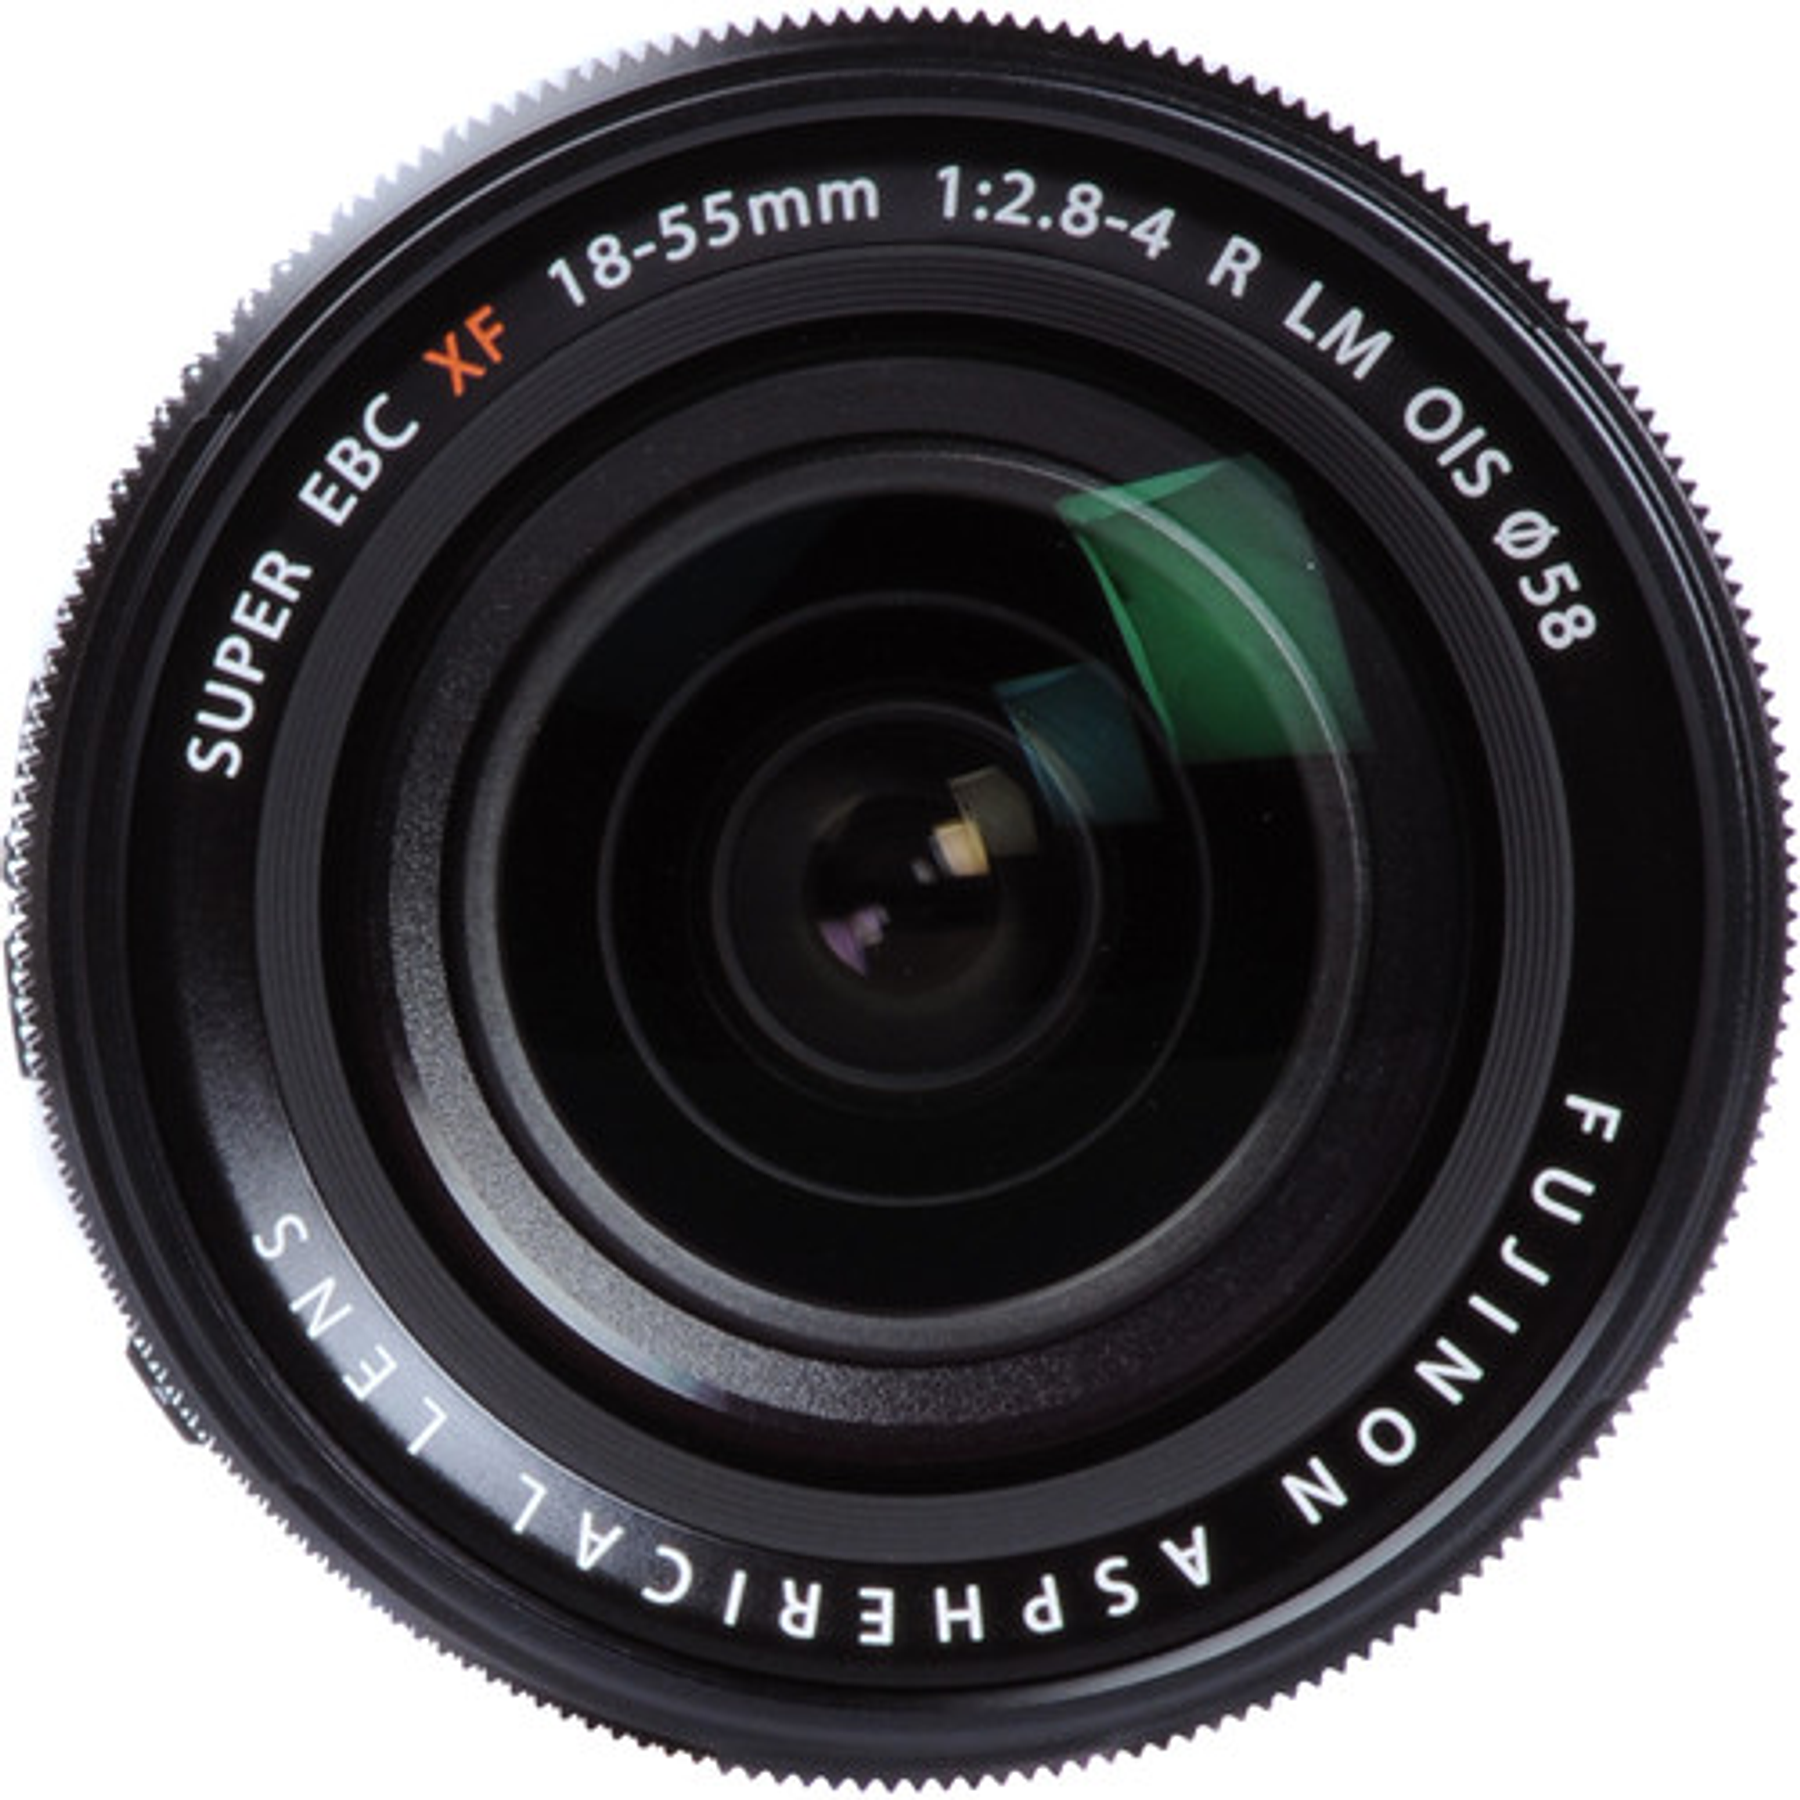 Fujifilm XF 18-55mm. F2.8-4 R LM OIS 